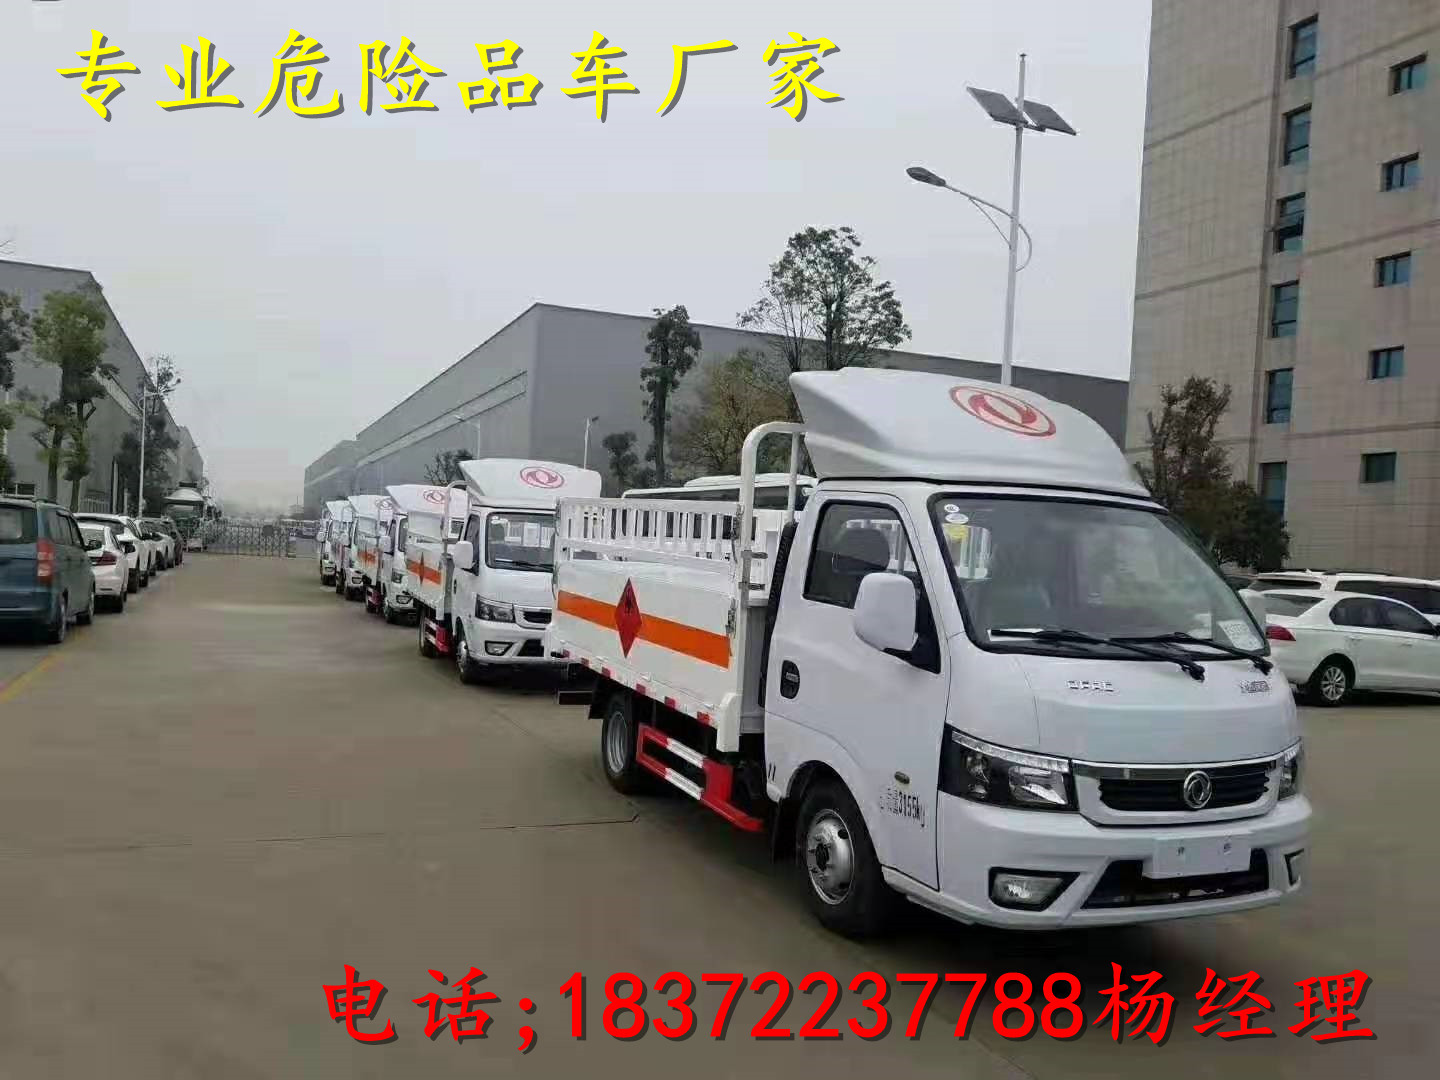 渭南柳汽乘龙6米汽油运输车整车配置